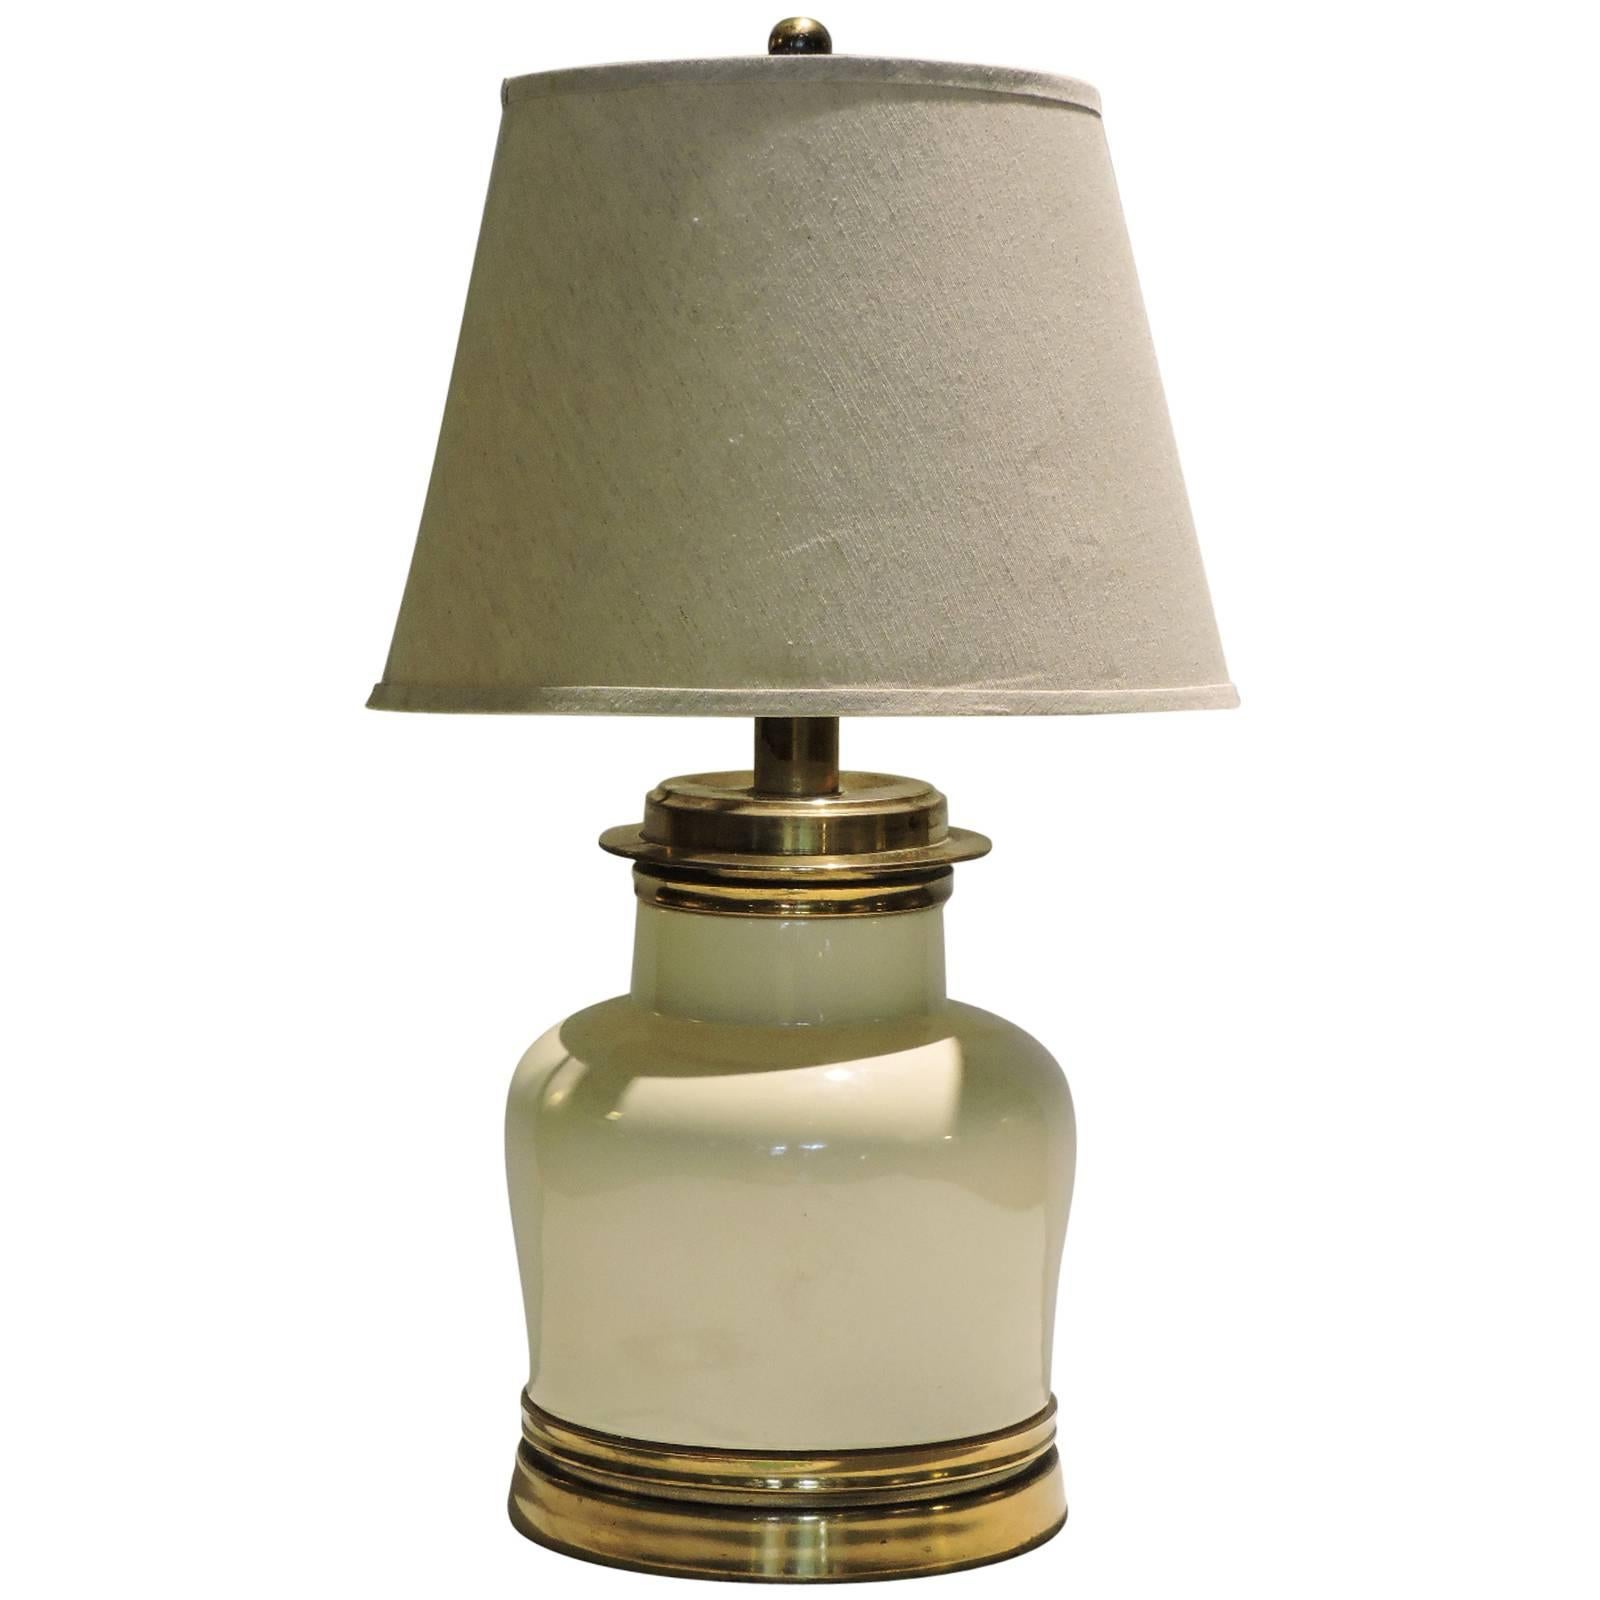 Karl Springer Style Vellum White Glazed Ceramic and Brass Table Lamp